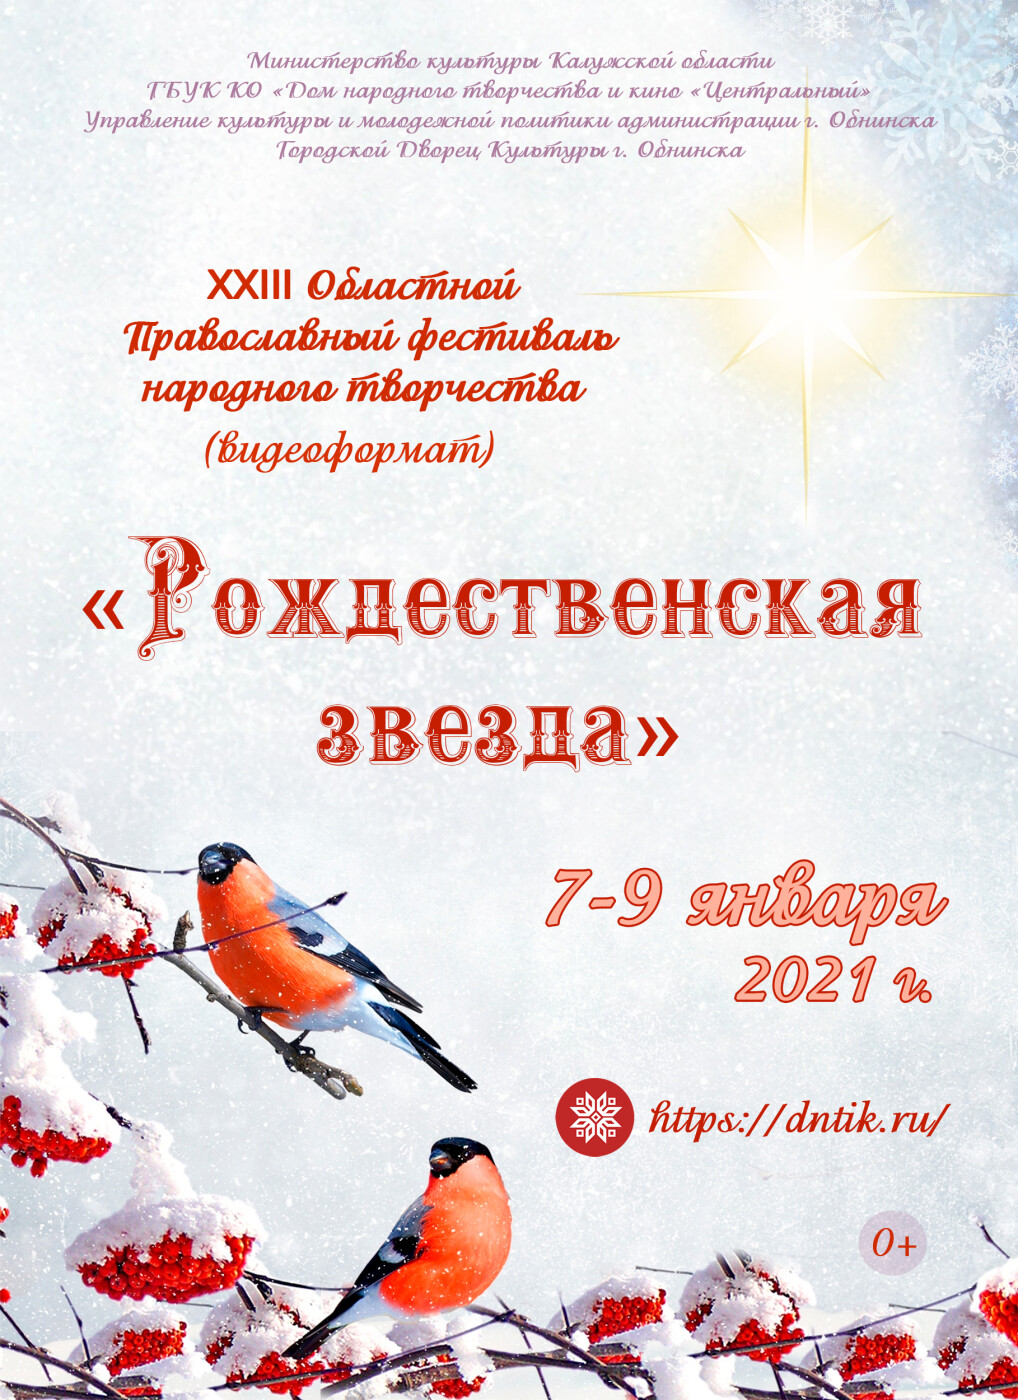 C 7 по 9 января 2021 года в Калужской области пройдёт Областной православный фестиваль народного творчества «Рождественская звезда»